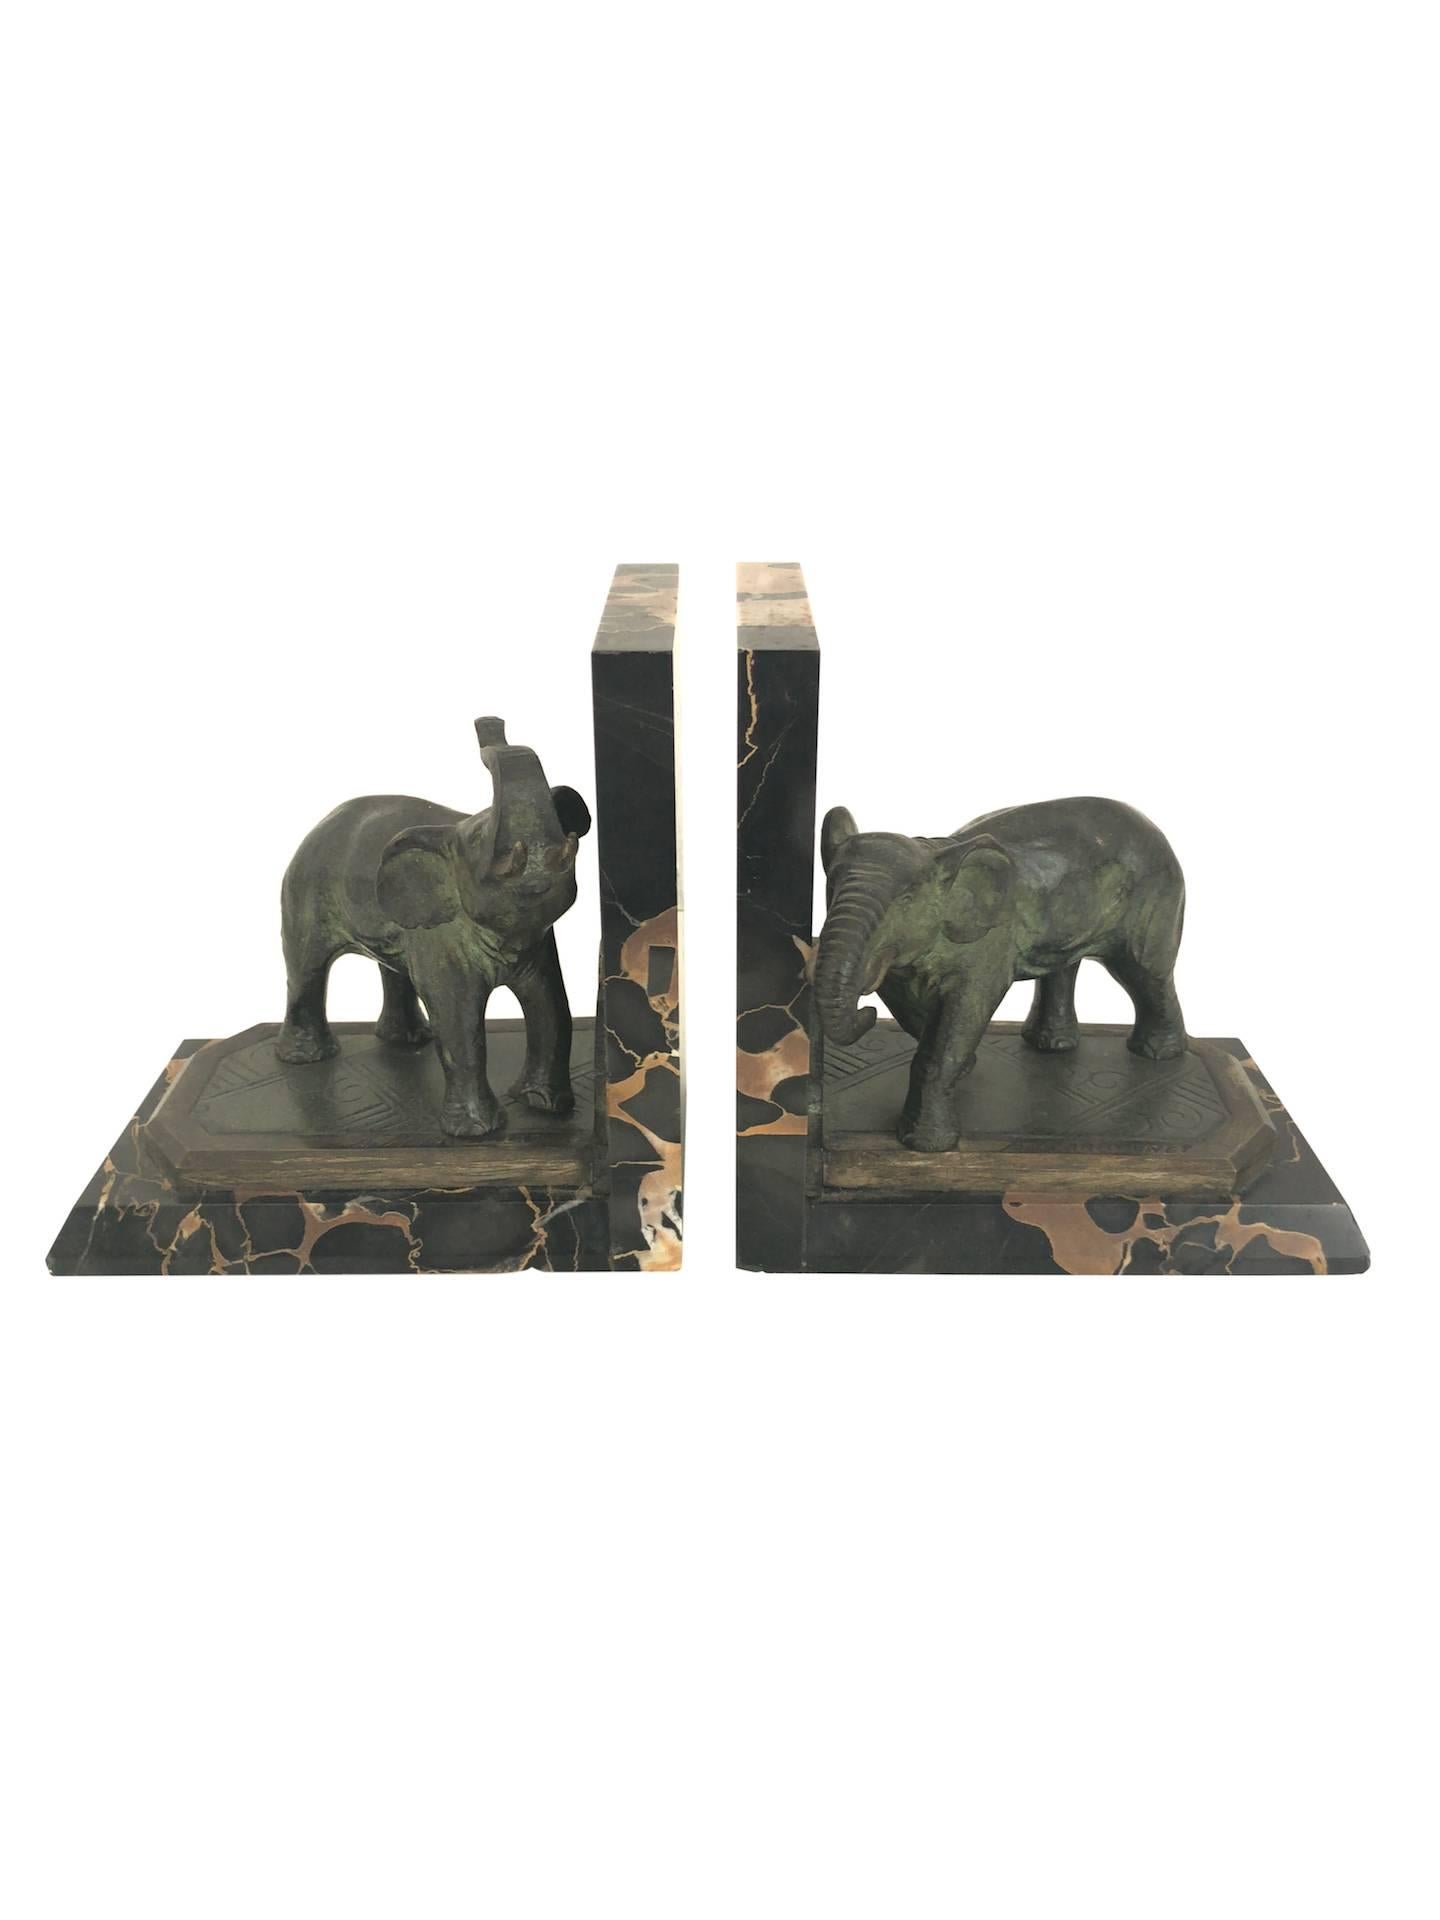 Buchstützen mit Elefanten in zwei verschiedenen Posen
Von Albert Marionnet (1852-1910), signiert
Frankreich, um 1900.

Material:
- Bronze, original patiniert
- Portor-Marmor-Sockel 

Abmessungen: 
Breite 14,5 cm 
Höhe 14,5 cm 
Tiefe 9,5 cm.